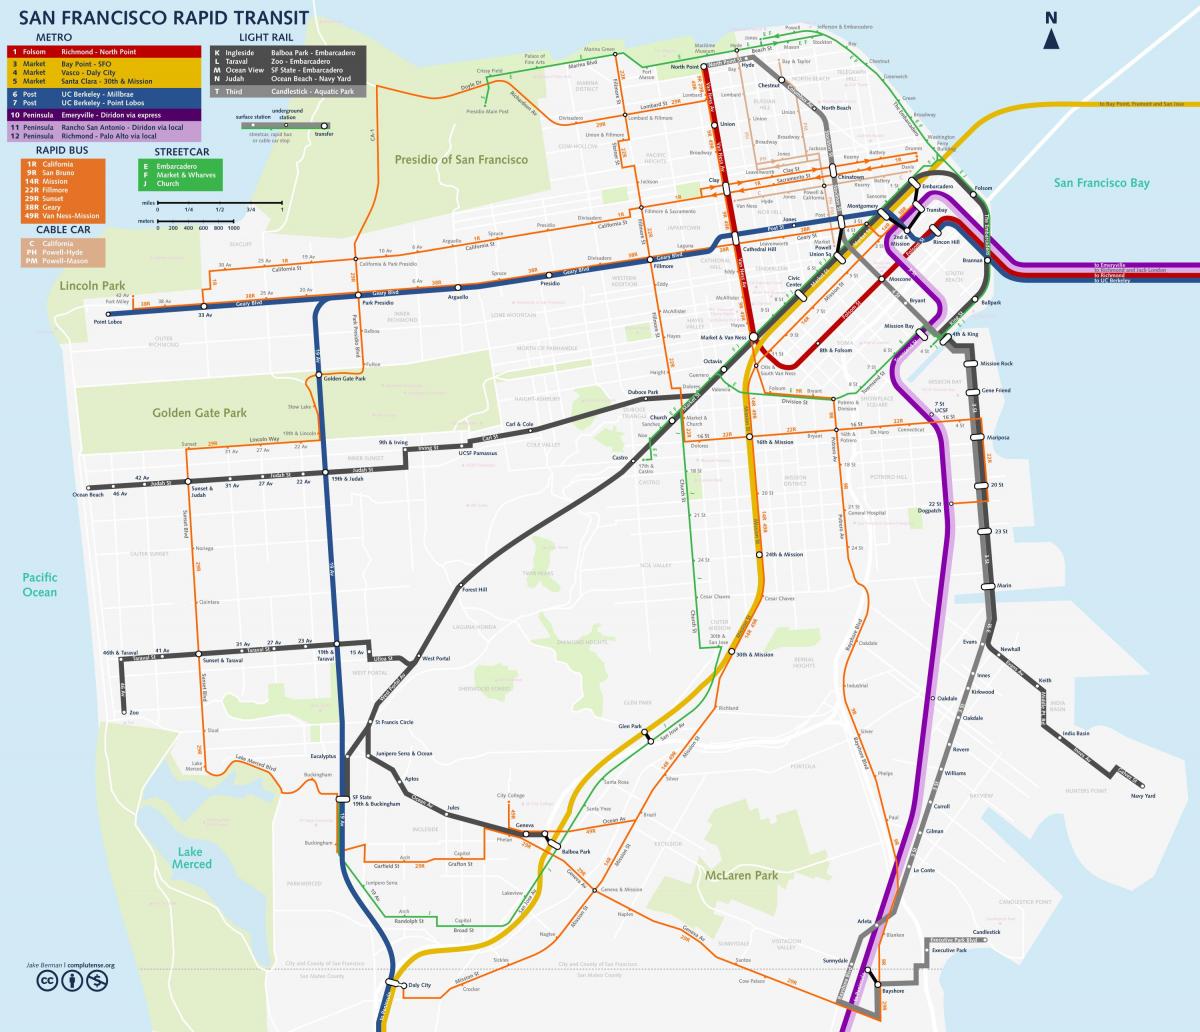 Kort over San Fran transit